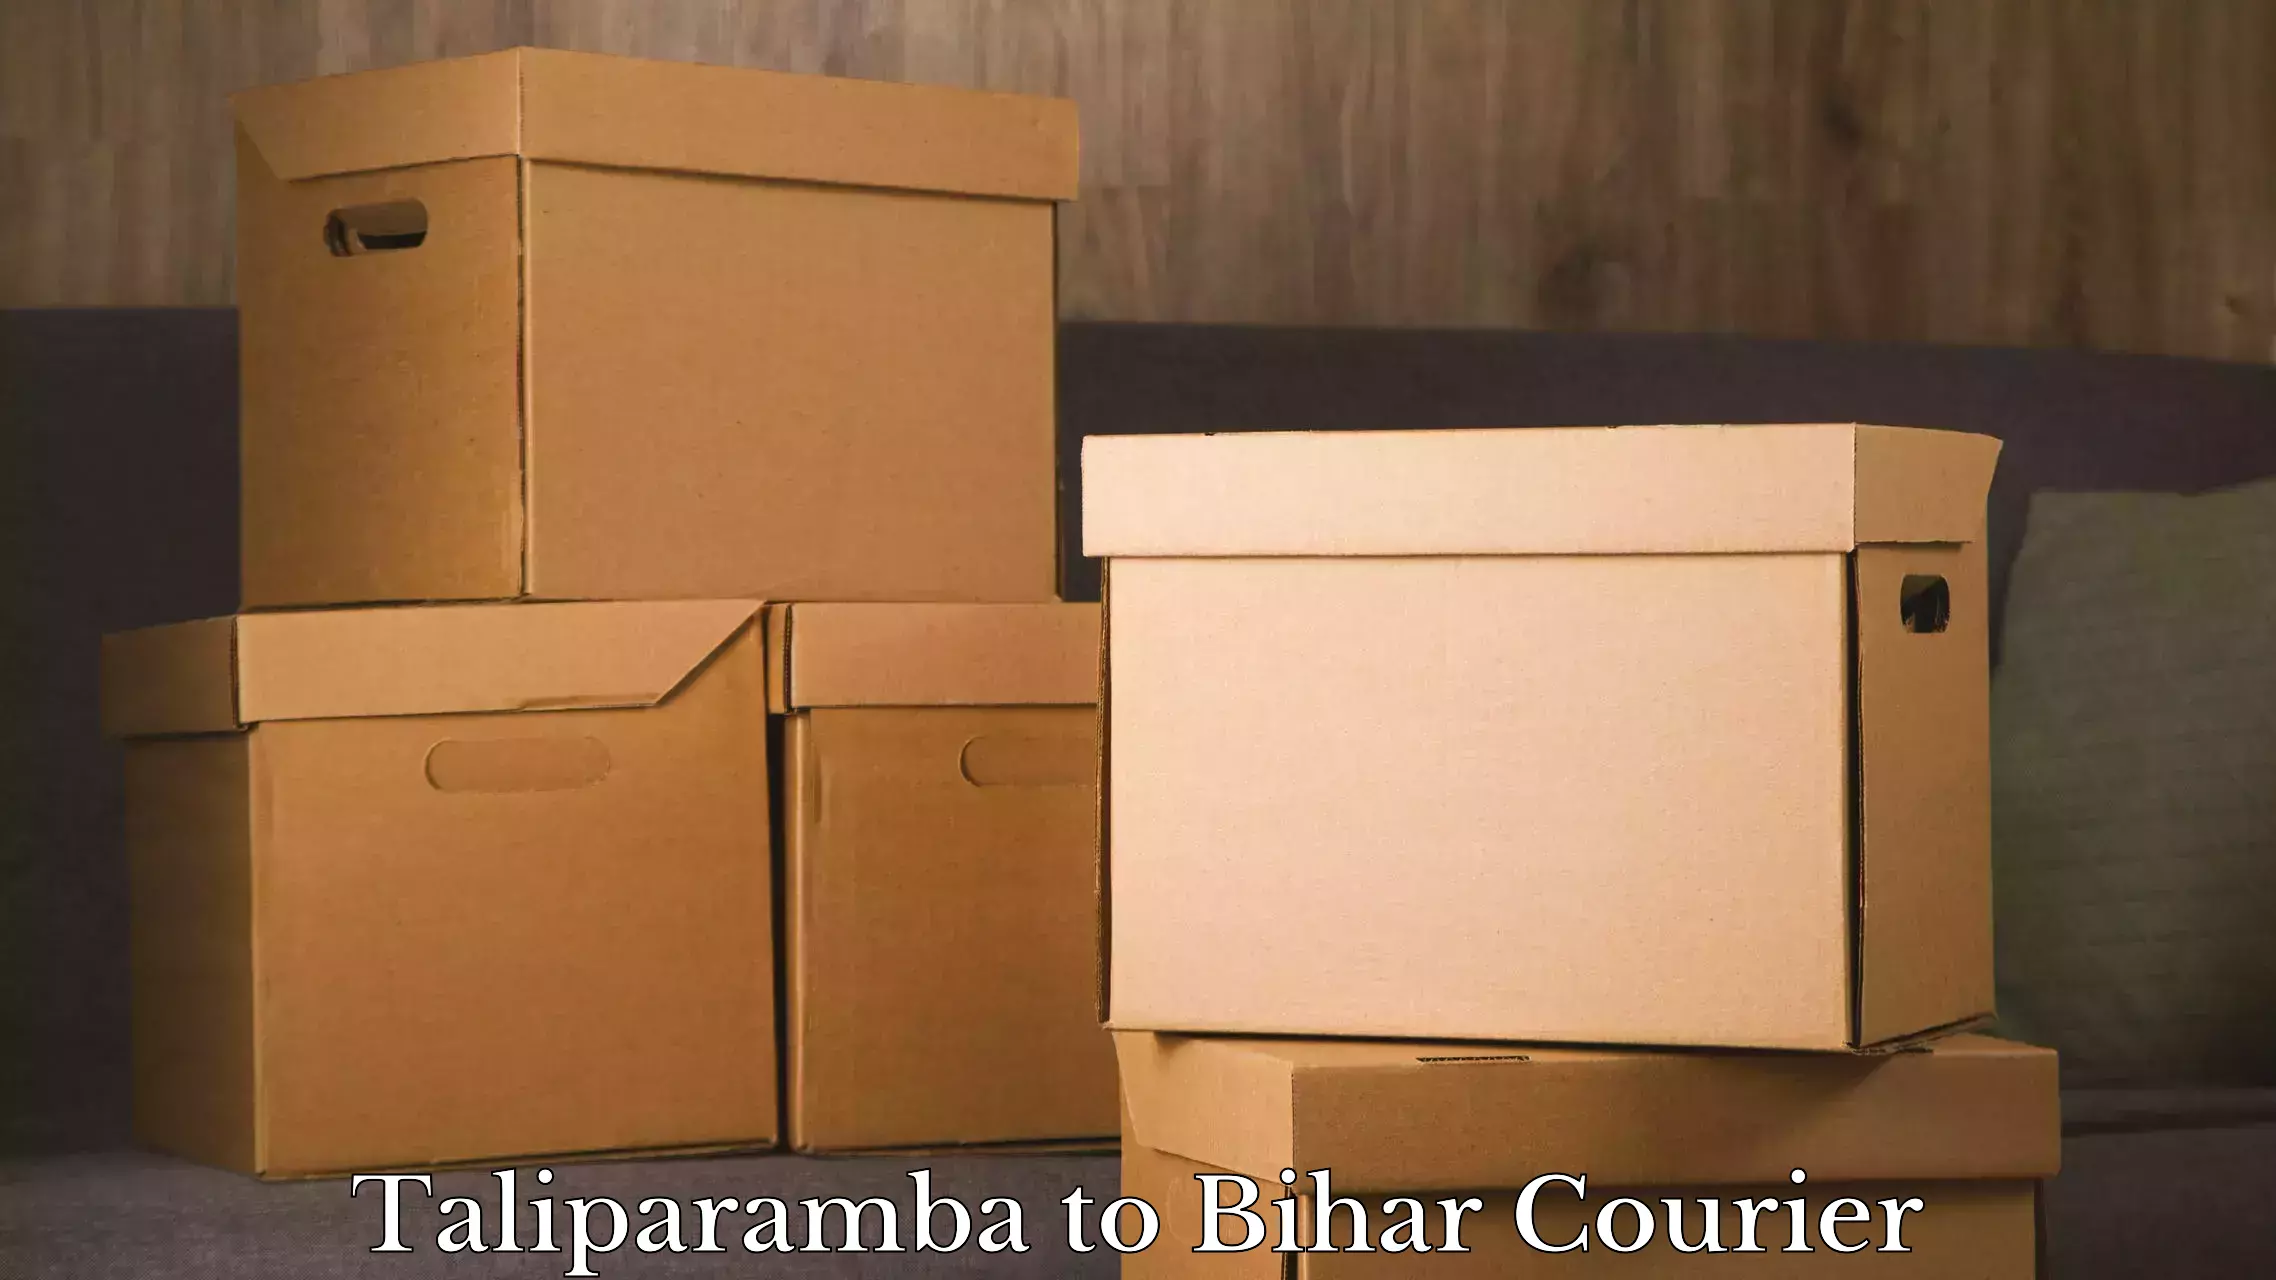 Luggage transport company Taliparamba to Dinara